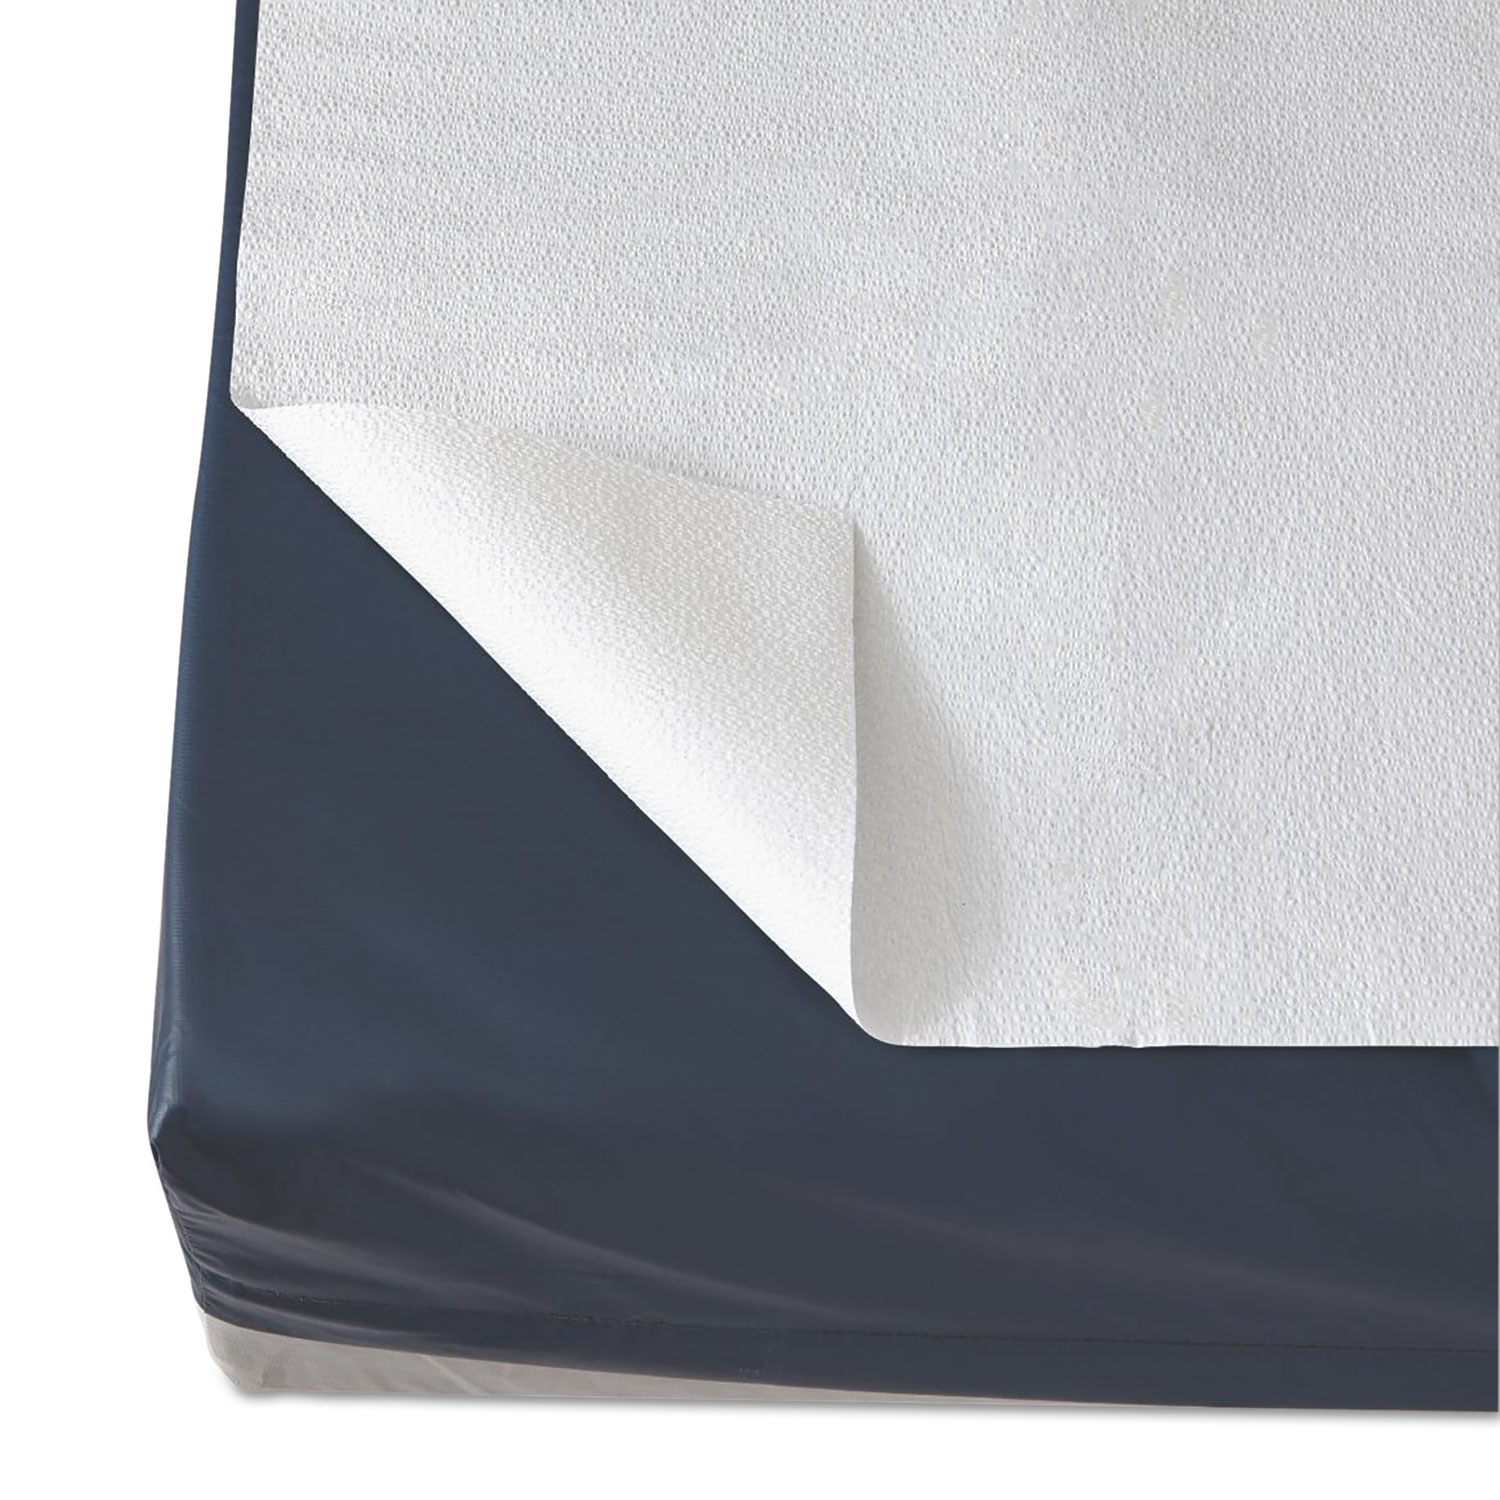  Medline NON23339 Disposable Drape Sheets, 40 x 48, White, 100/Carton (MIINON23339) 